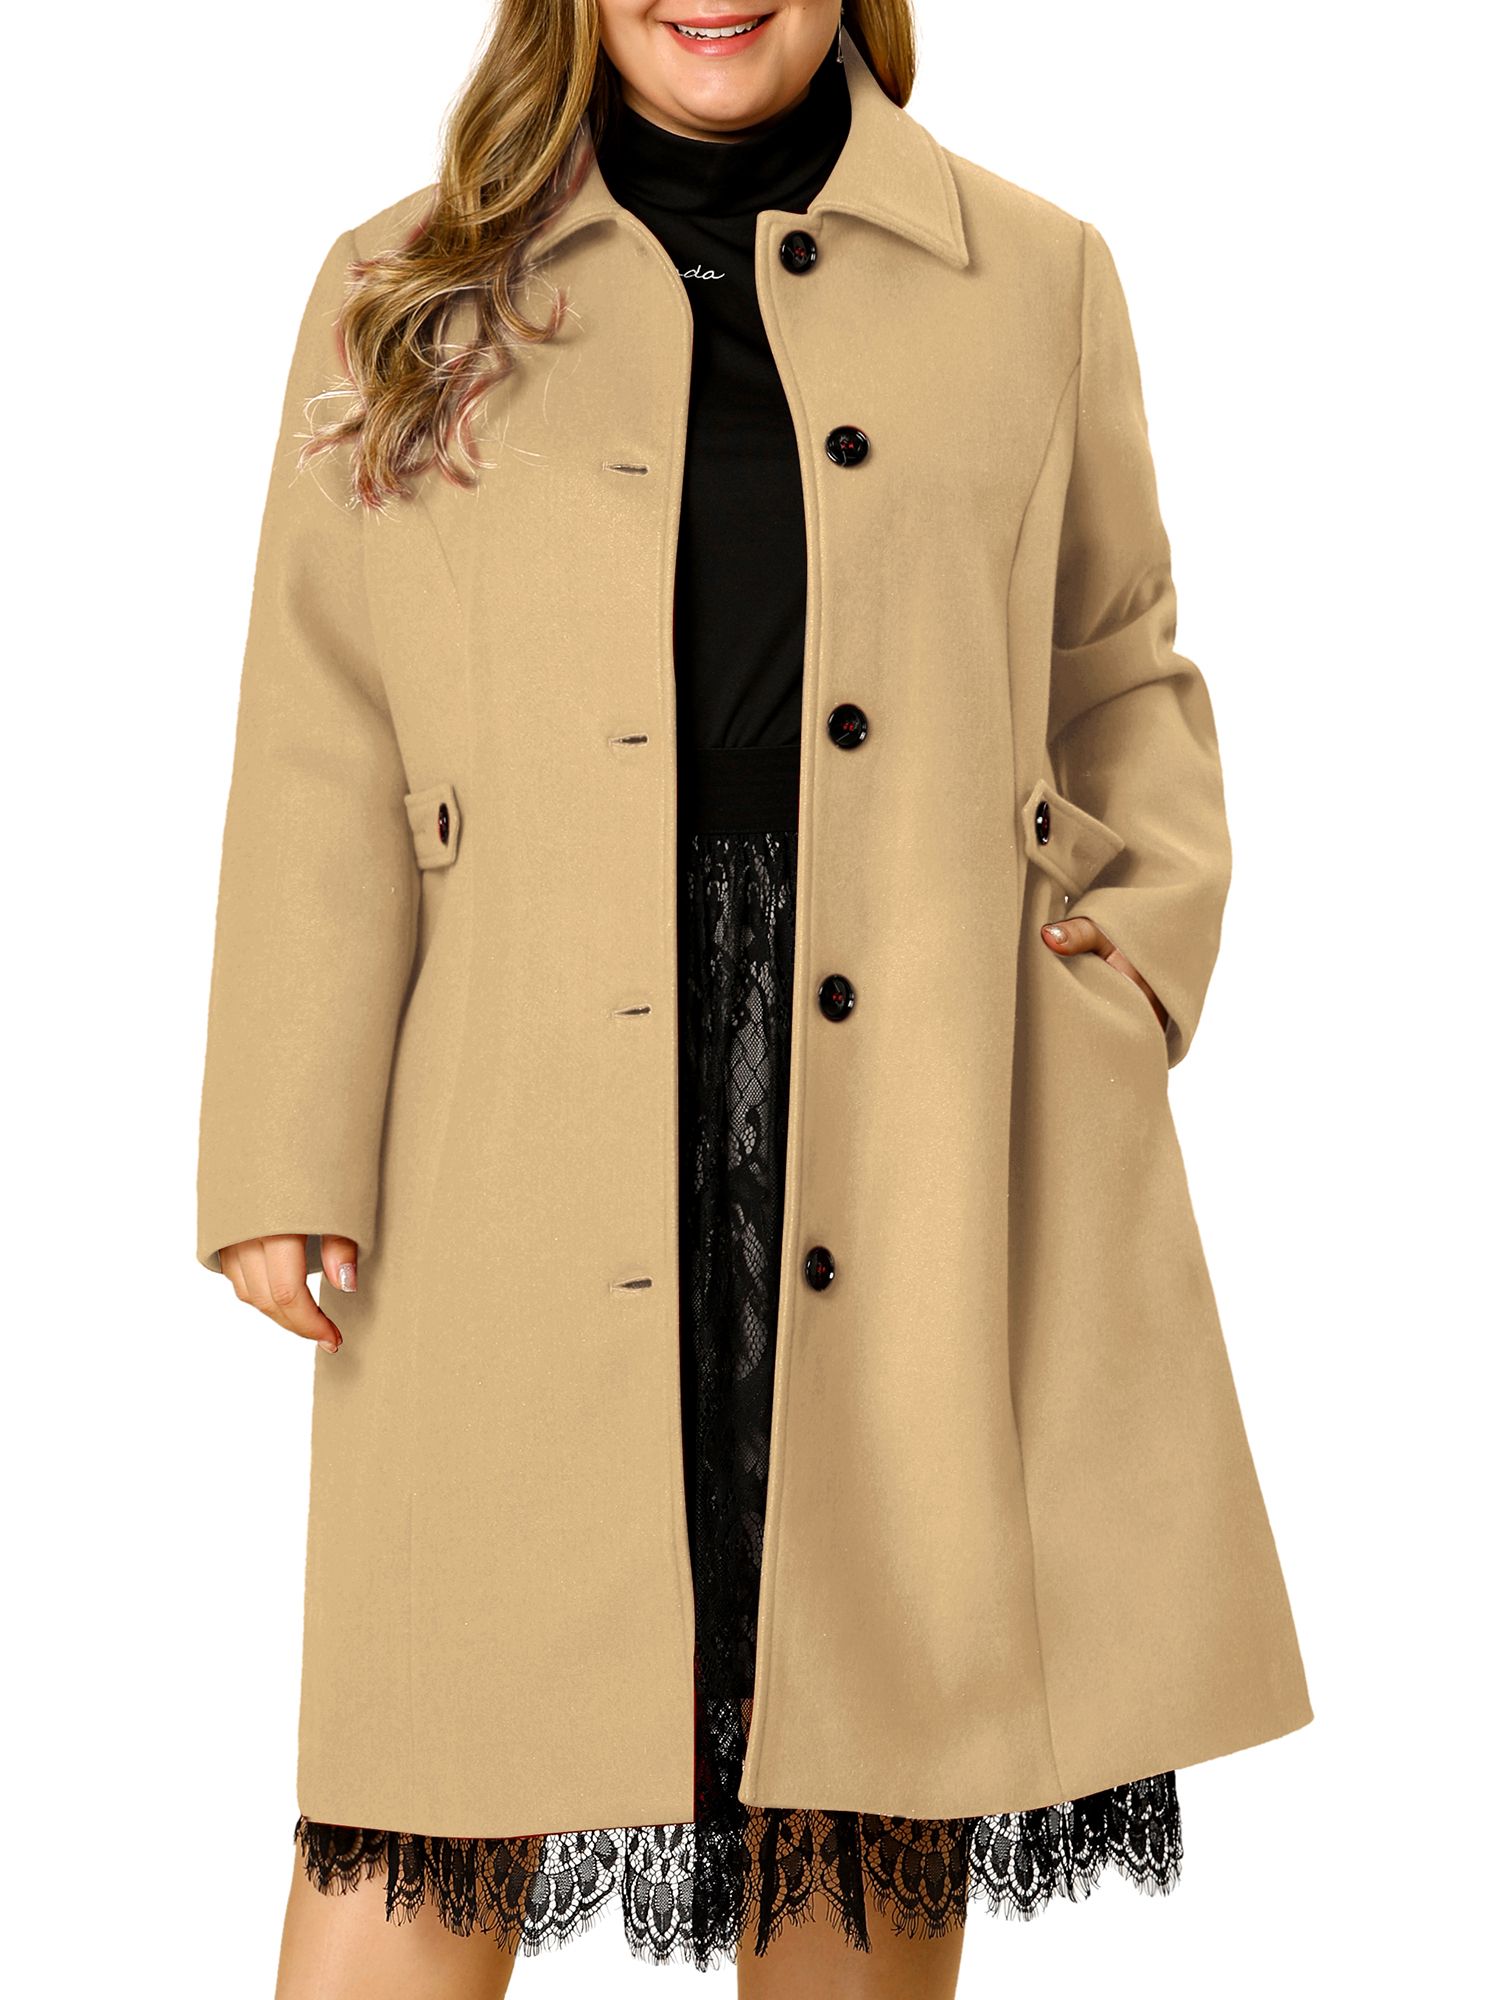 Jacket Denim Trench Parka Outwear US Winter Women Warm Collar Hooded Long Coat